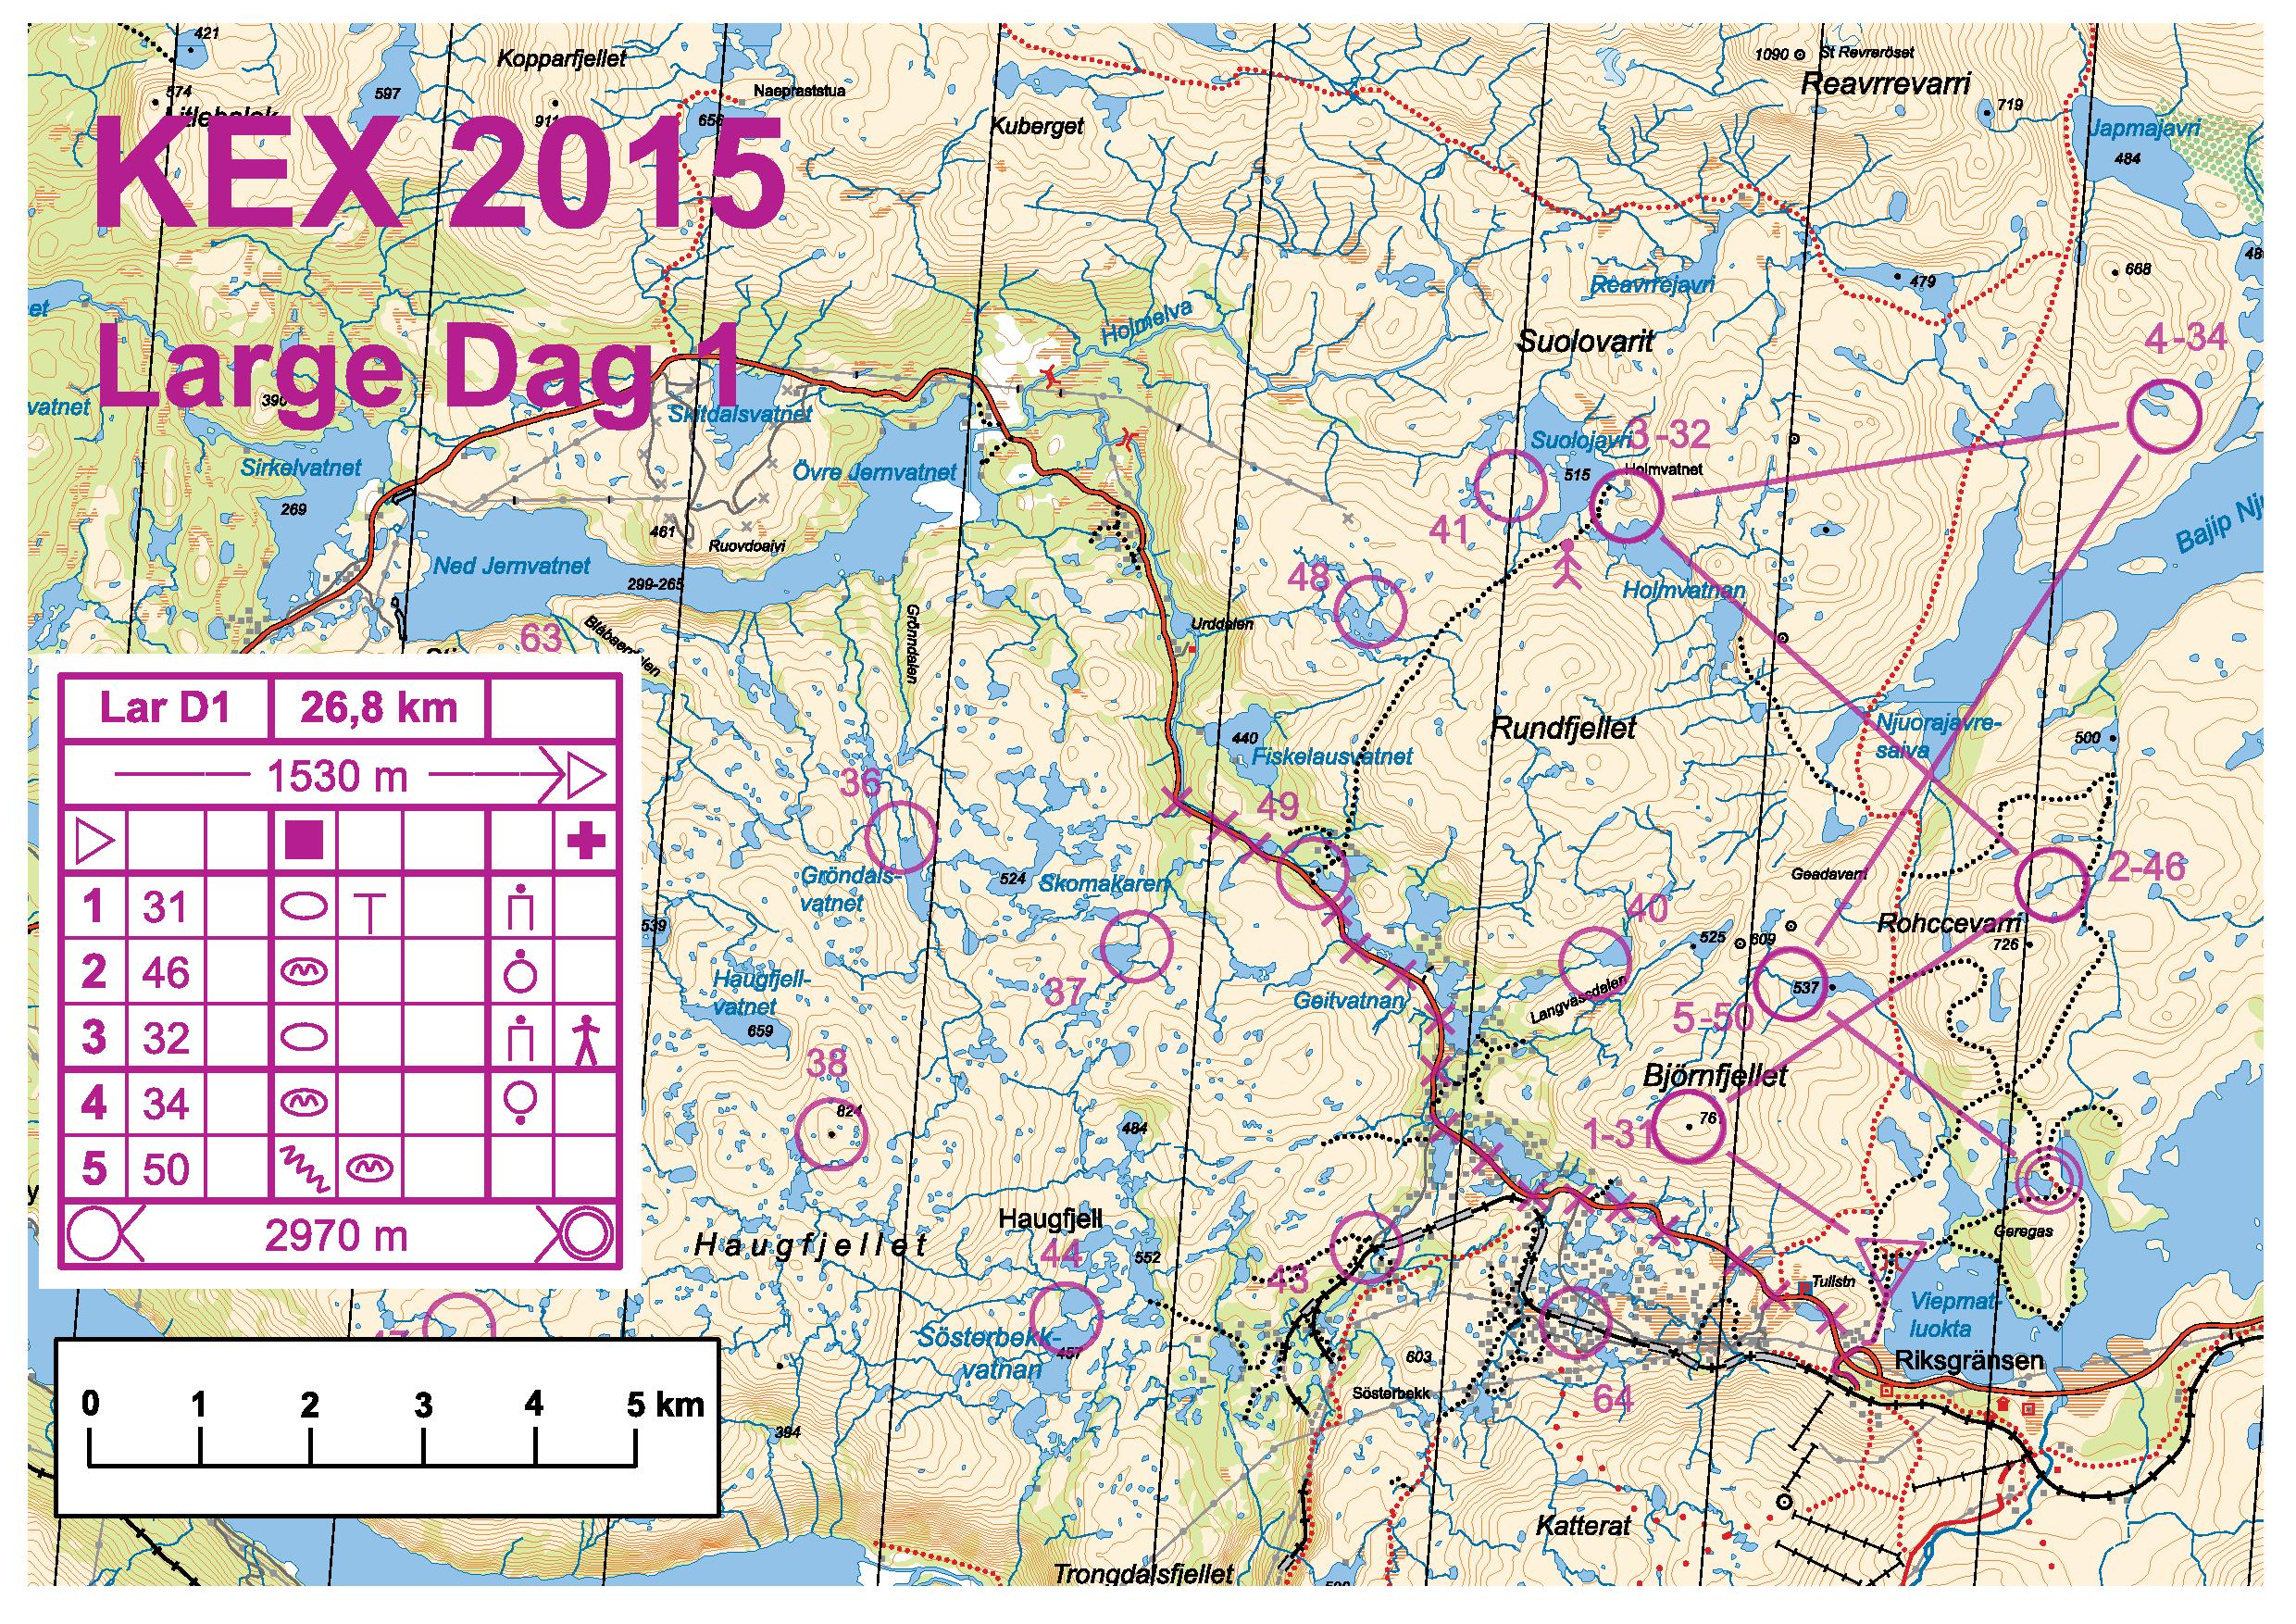 KEX 2015 dag 1 (Large Men) (2015-08-22)